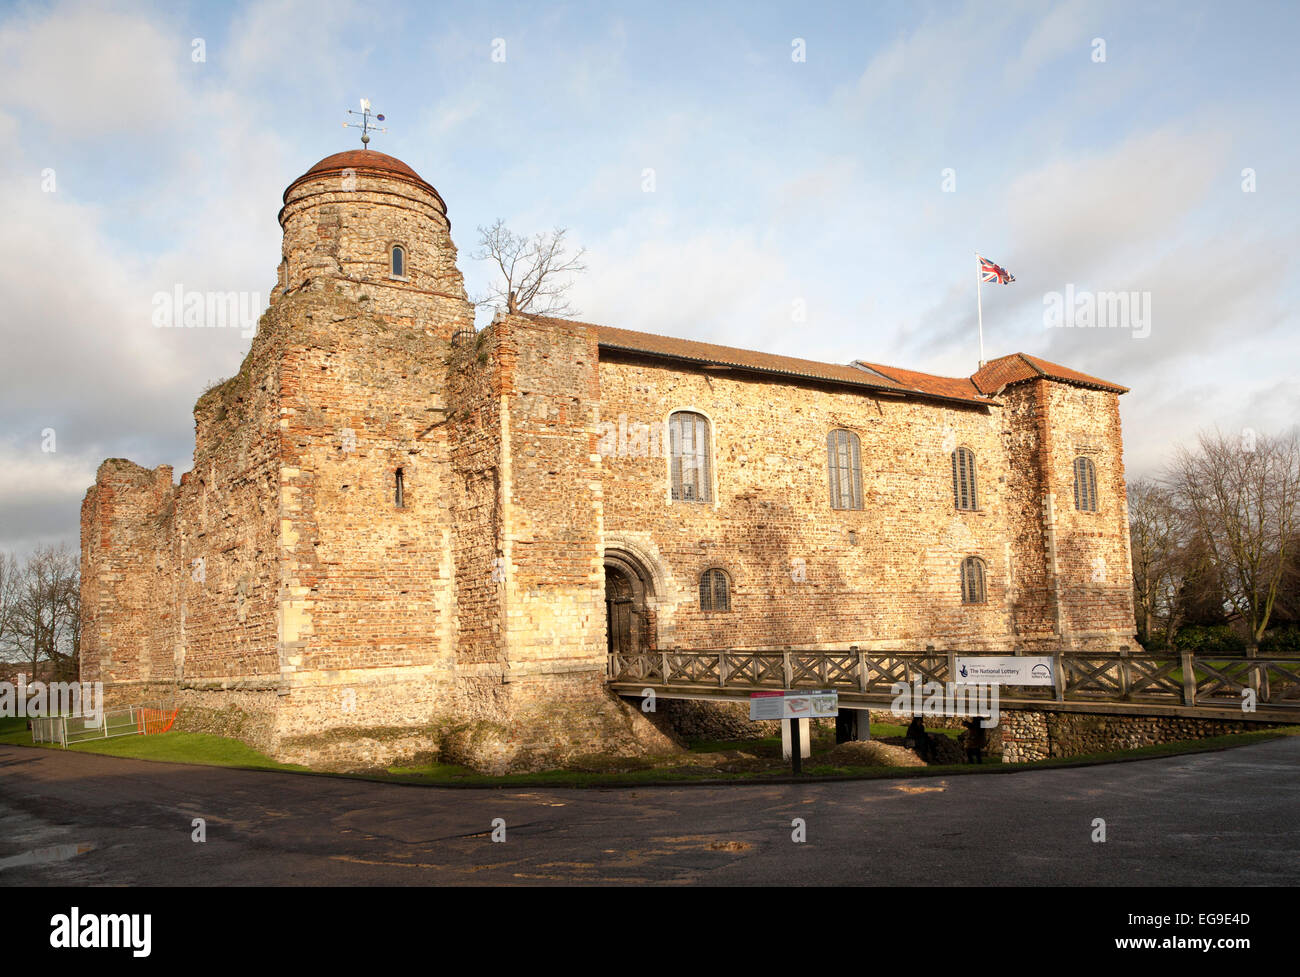 L'historique château normand, Colchester, Essex, England, UK Banque D'Images